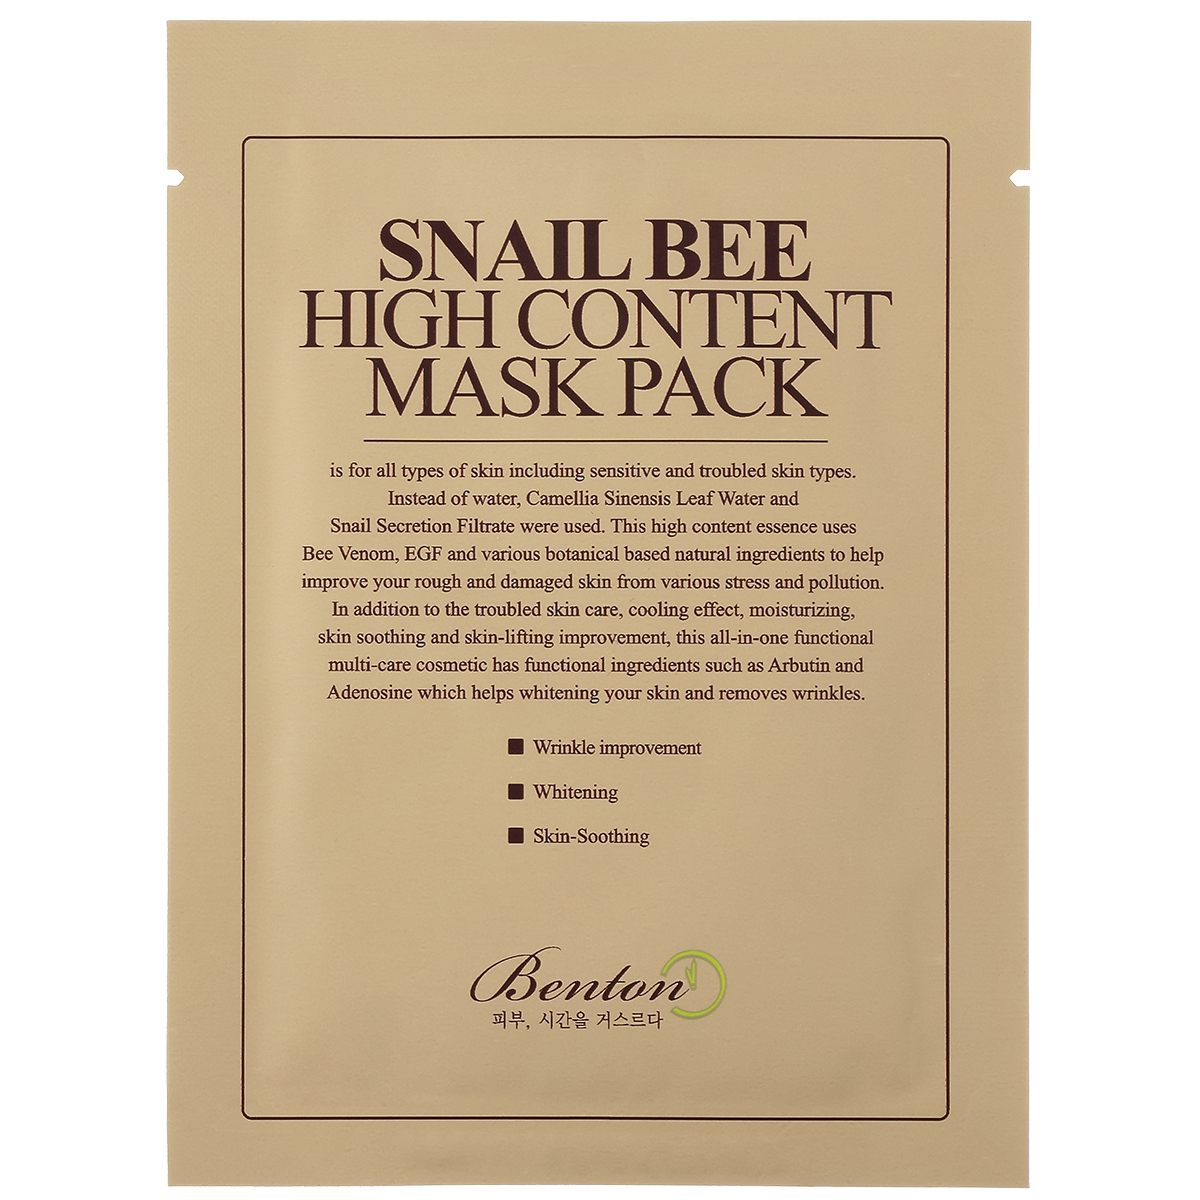 Bilde av Snail Bee High Content Mask Pack, Benton K-beauty